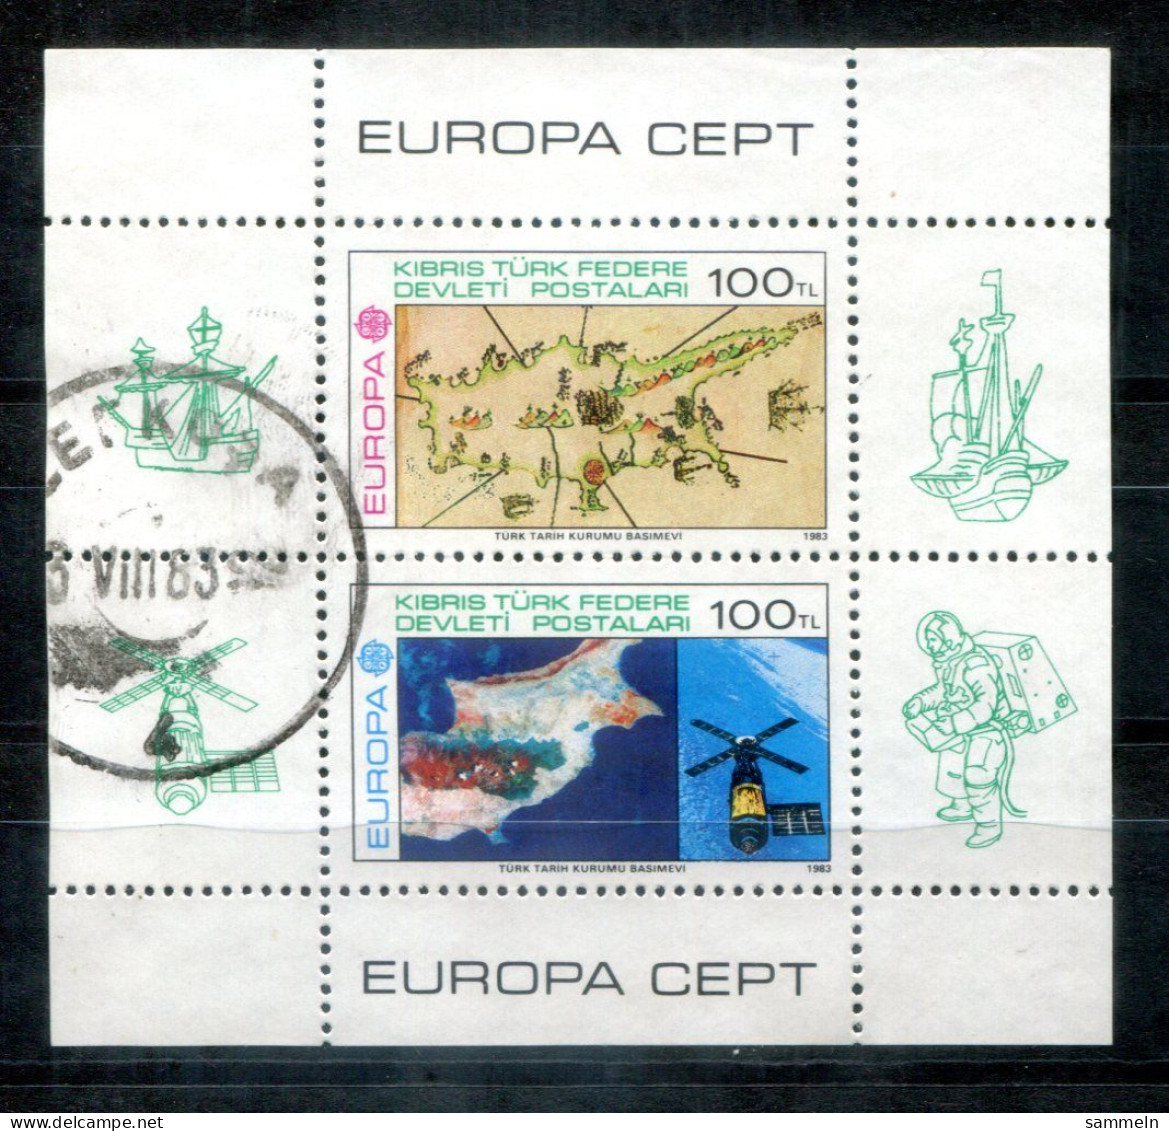 TÜRKISCH-ZYPERN Block 4, Bl.4 Canc. - Europa CEPT 19853, Weltraum. Space, Espace - TURKISH CYPRUS / CHYPRE TURQUE - Used Stamps